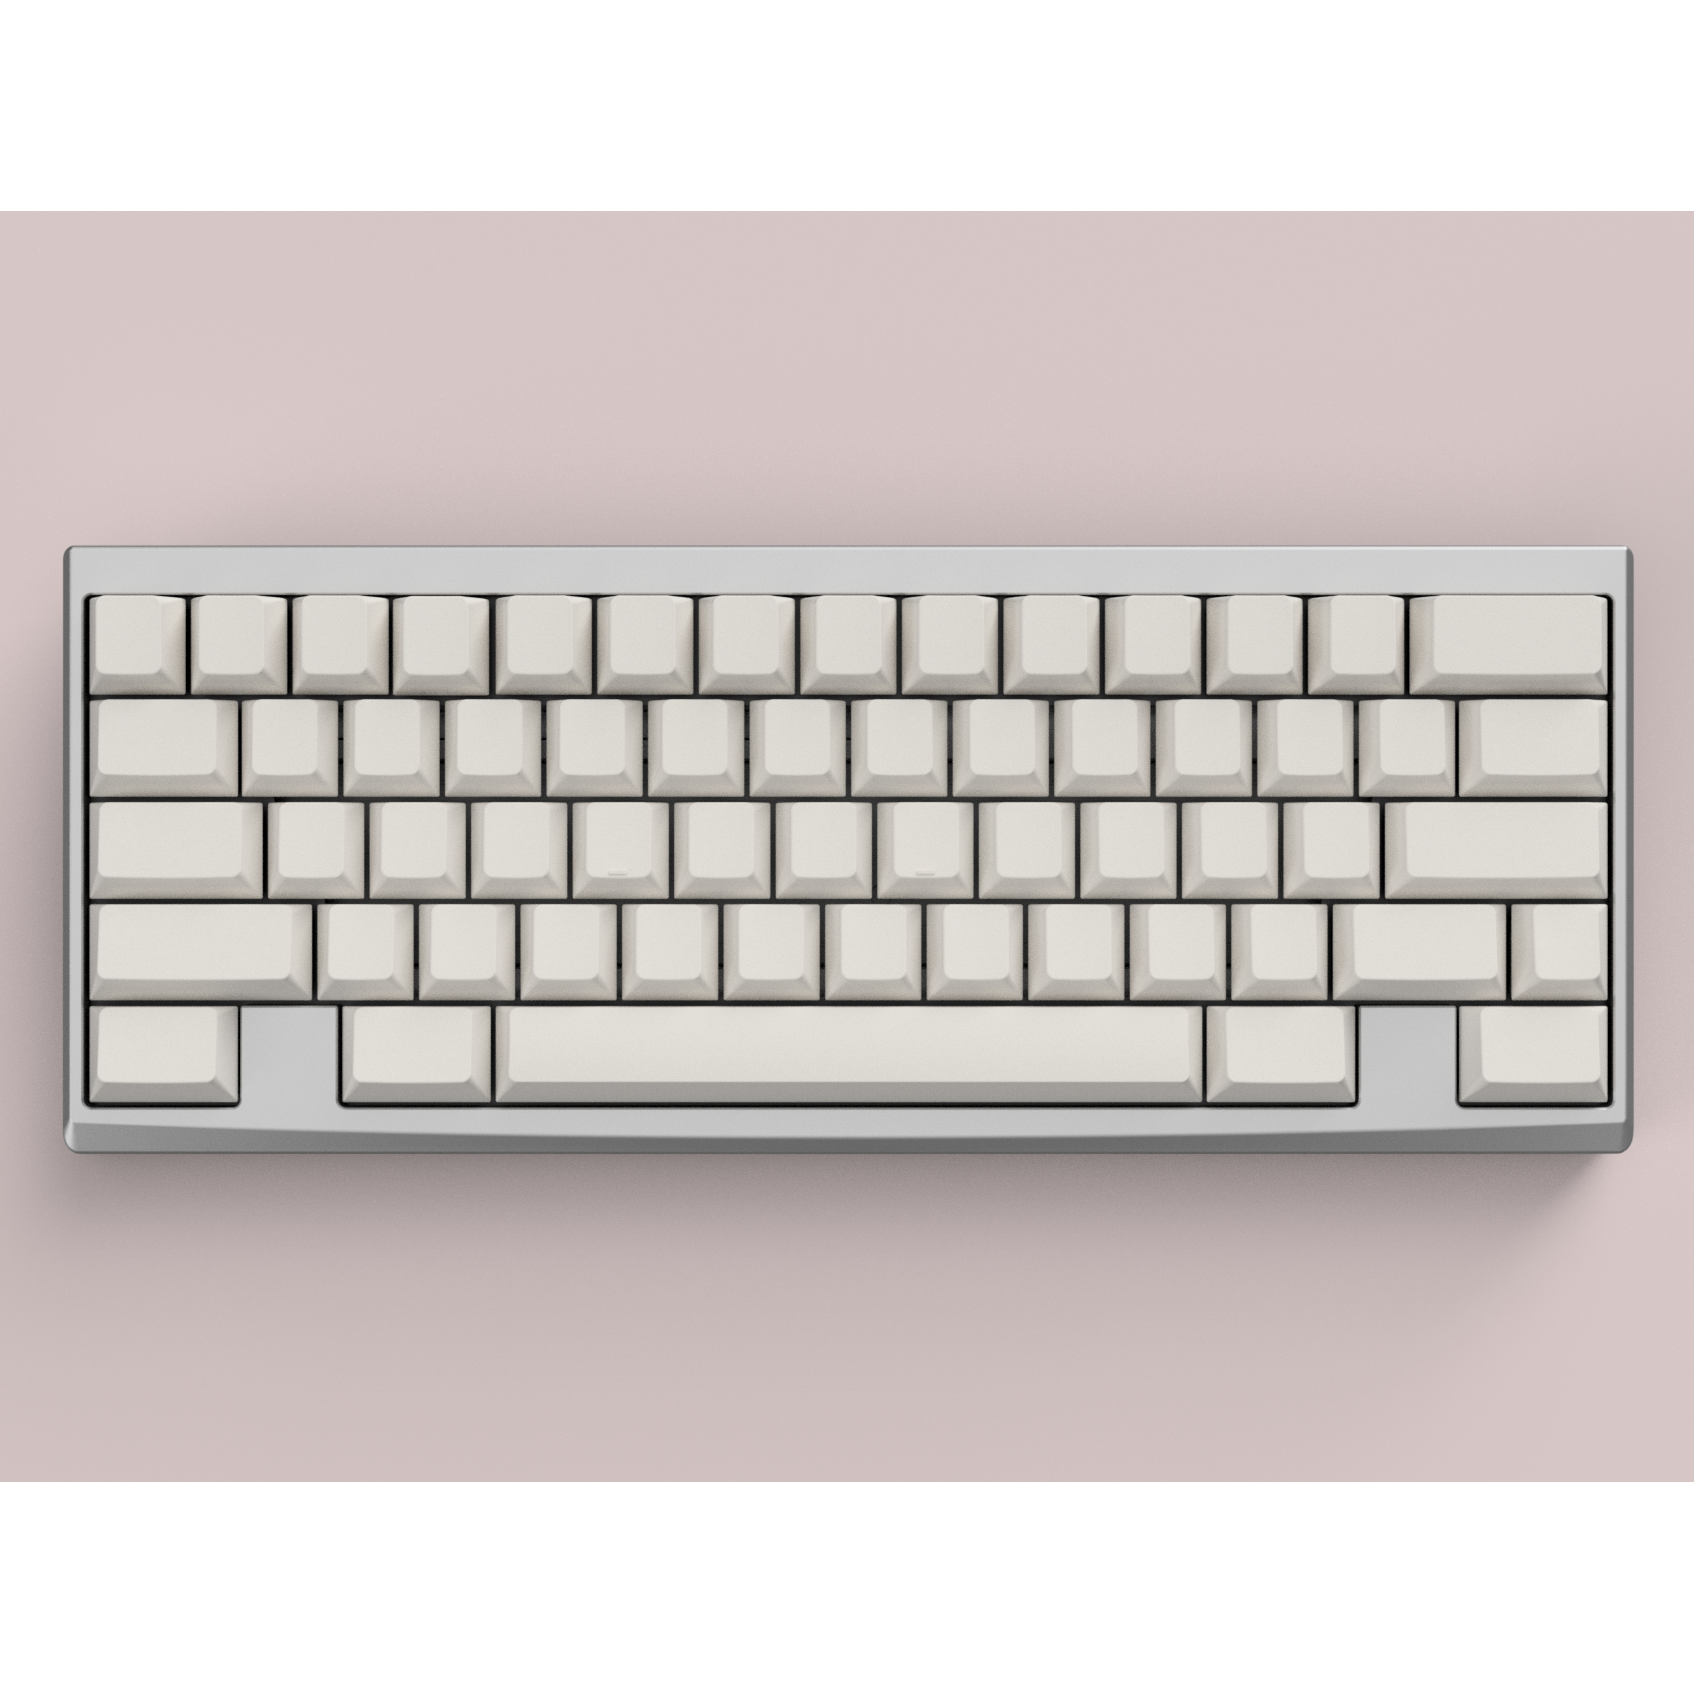 Derivative R1 Keyboard Kit